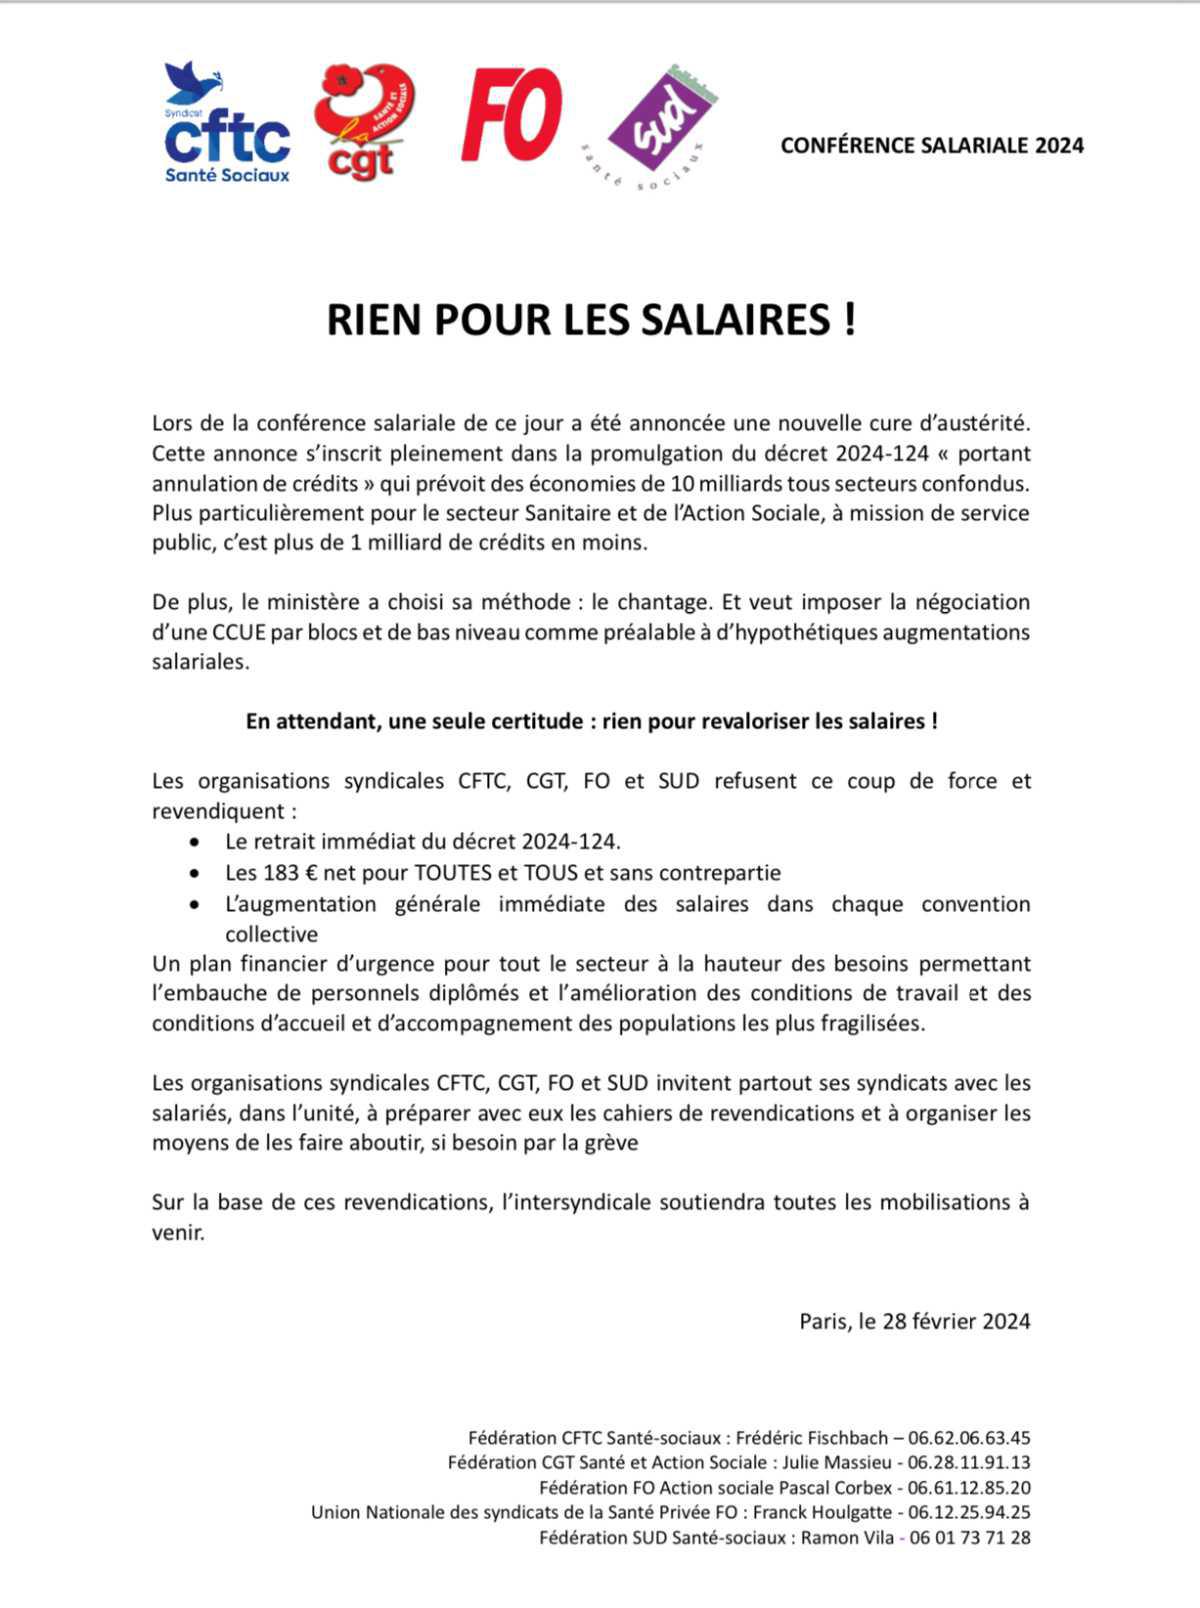 Communiqué de presse intersyndical suite à la conférence salariale 2024 - RIEN POUR LES SALAIRES !